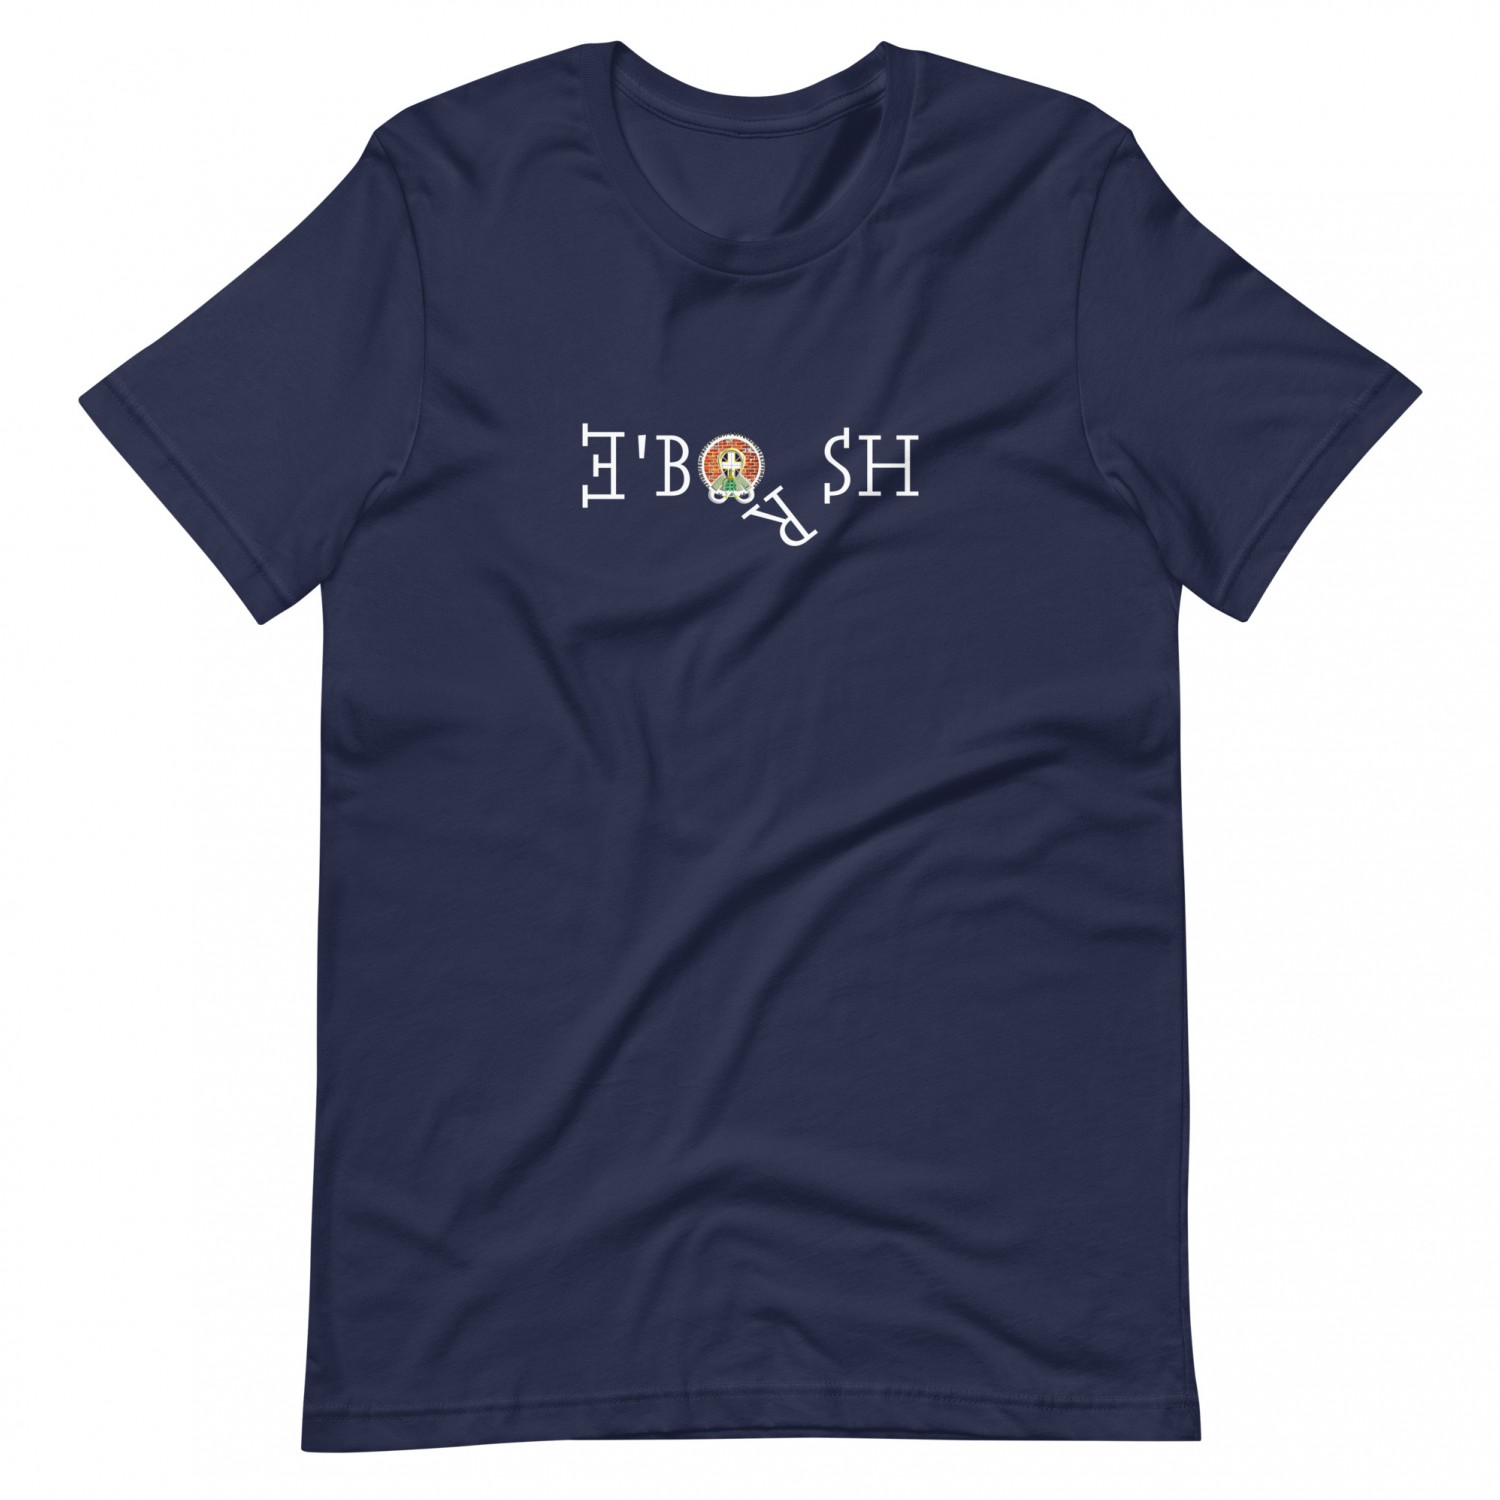 T-shirt "EBORSH"